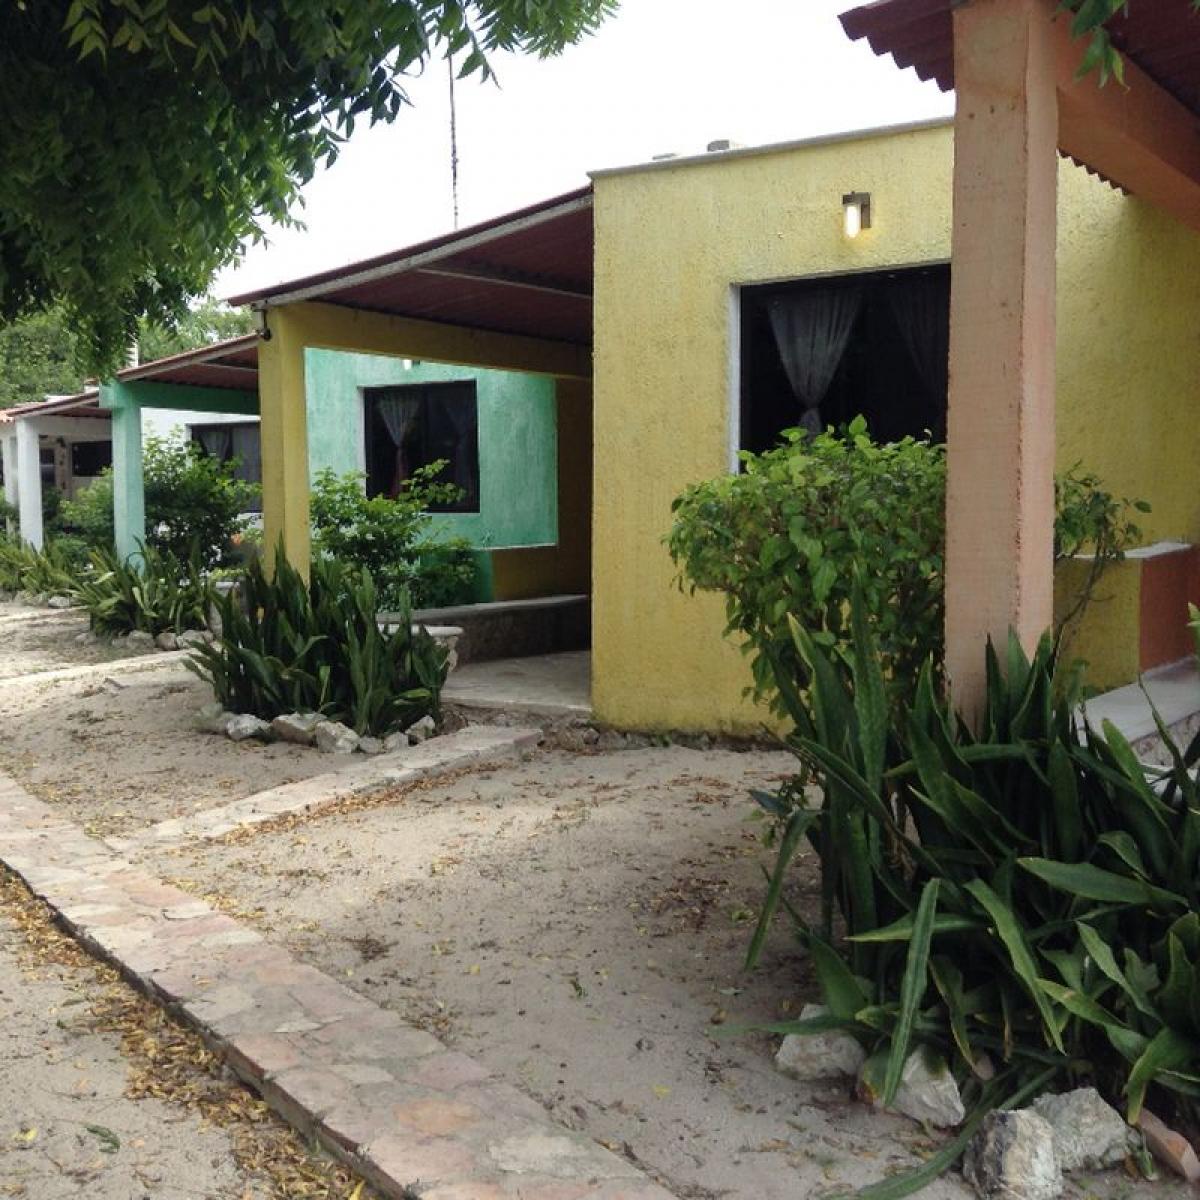 Picture of Development Site For Sale in Yucatan, Yucatan, Mexico